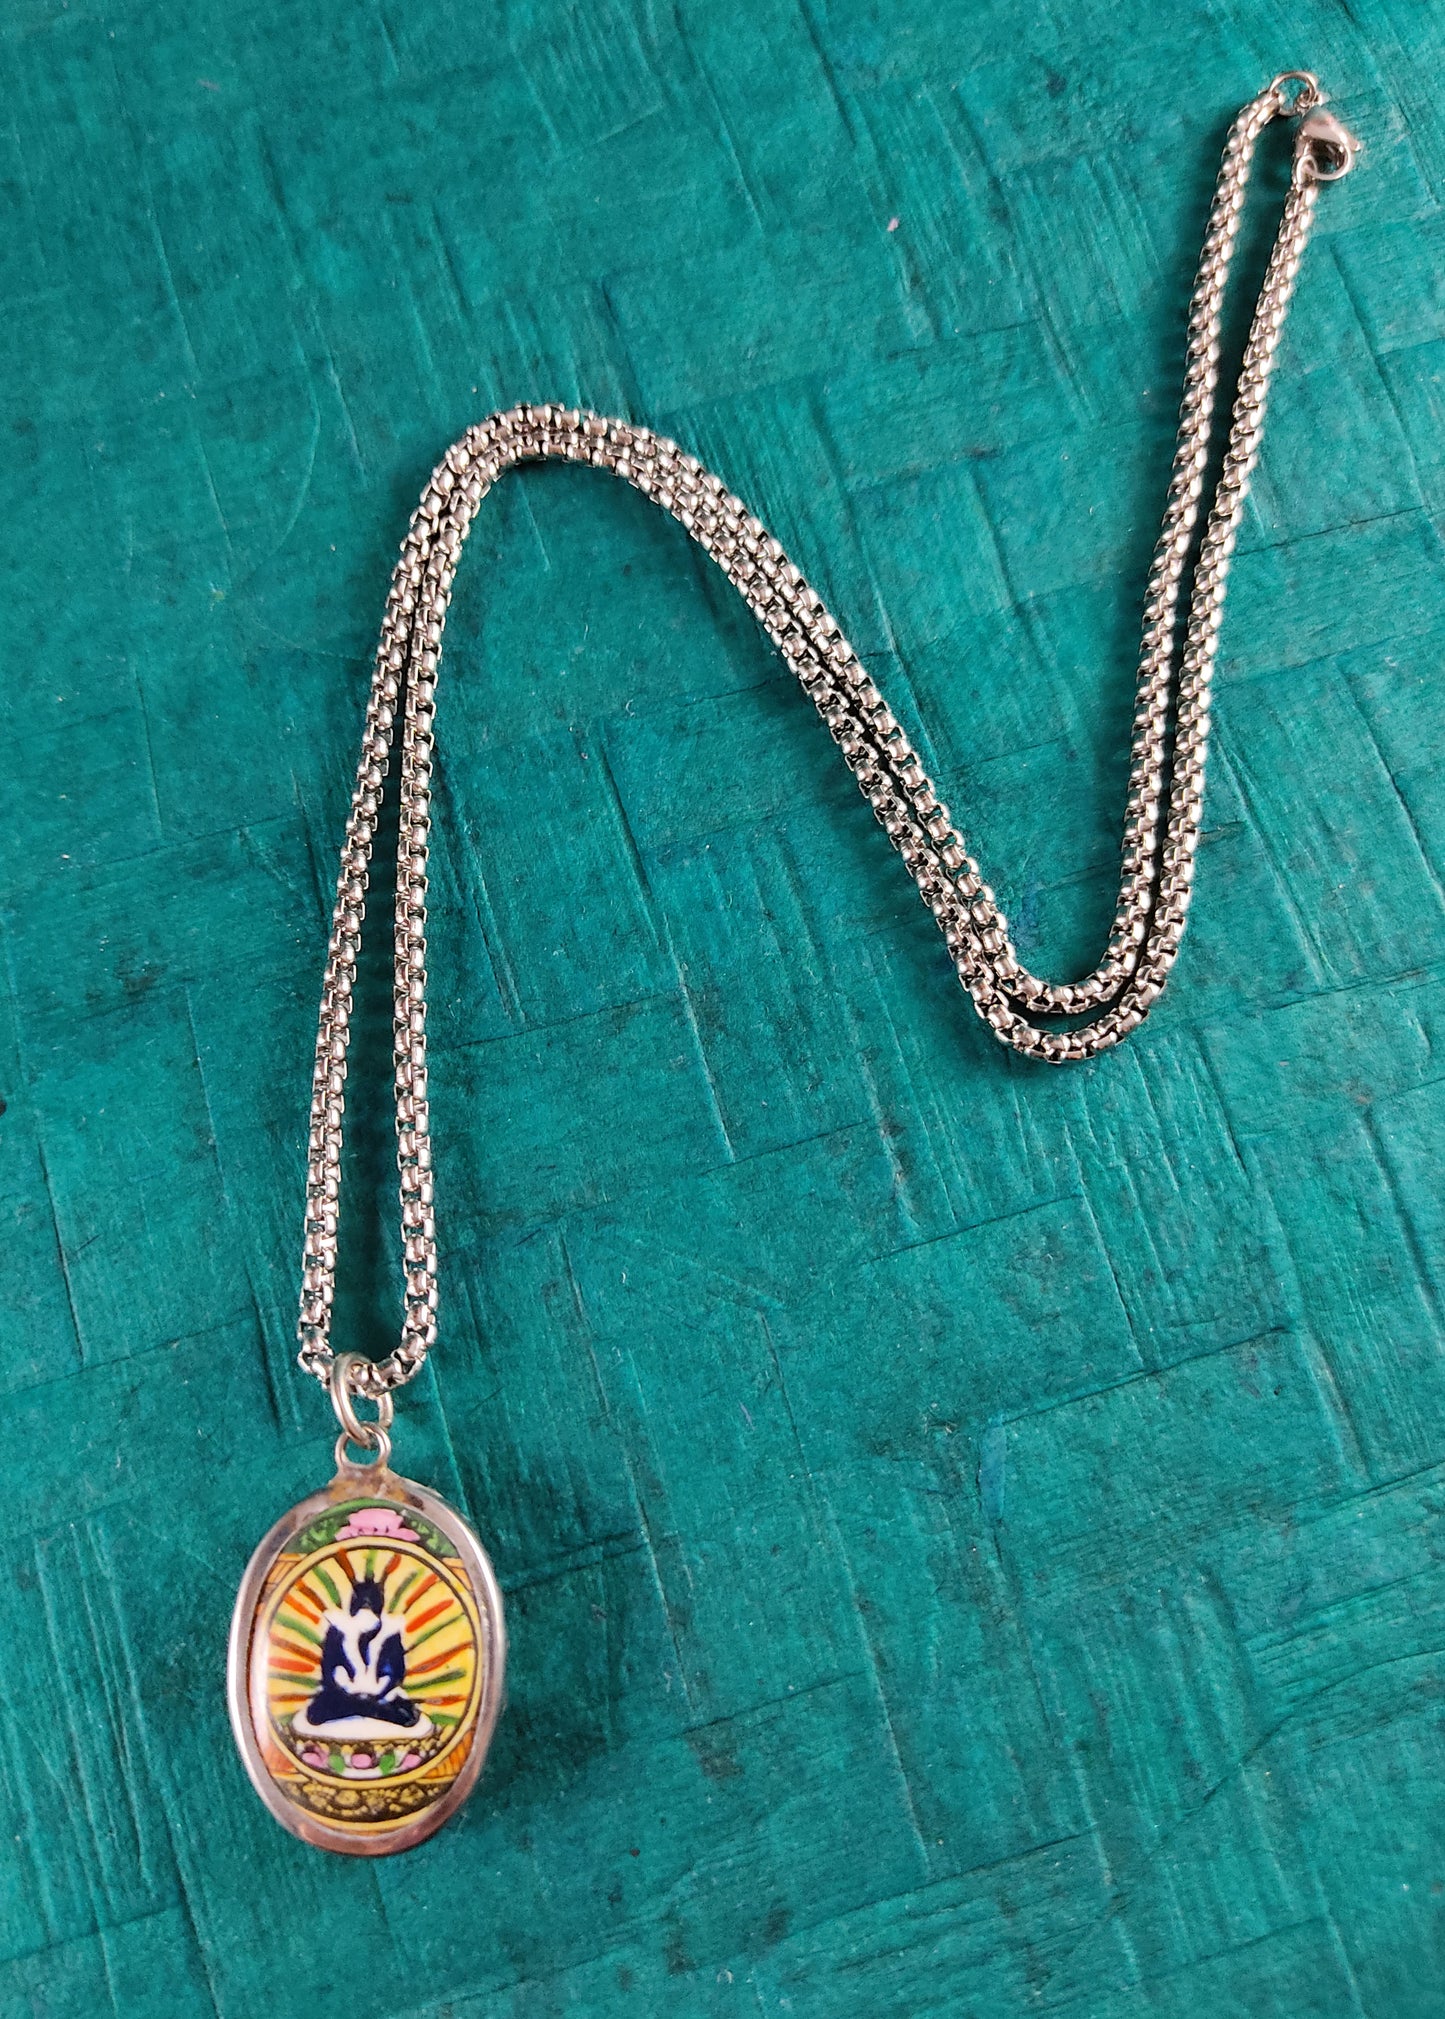 Yab Yum Shiva Shakti Tantra Union Pendant | 24" Stainless Steel Necklace | Yoga Gift